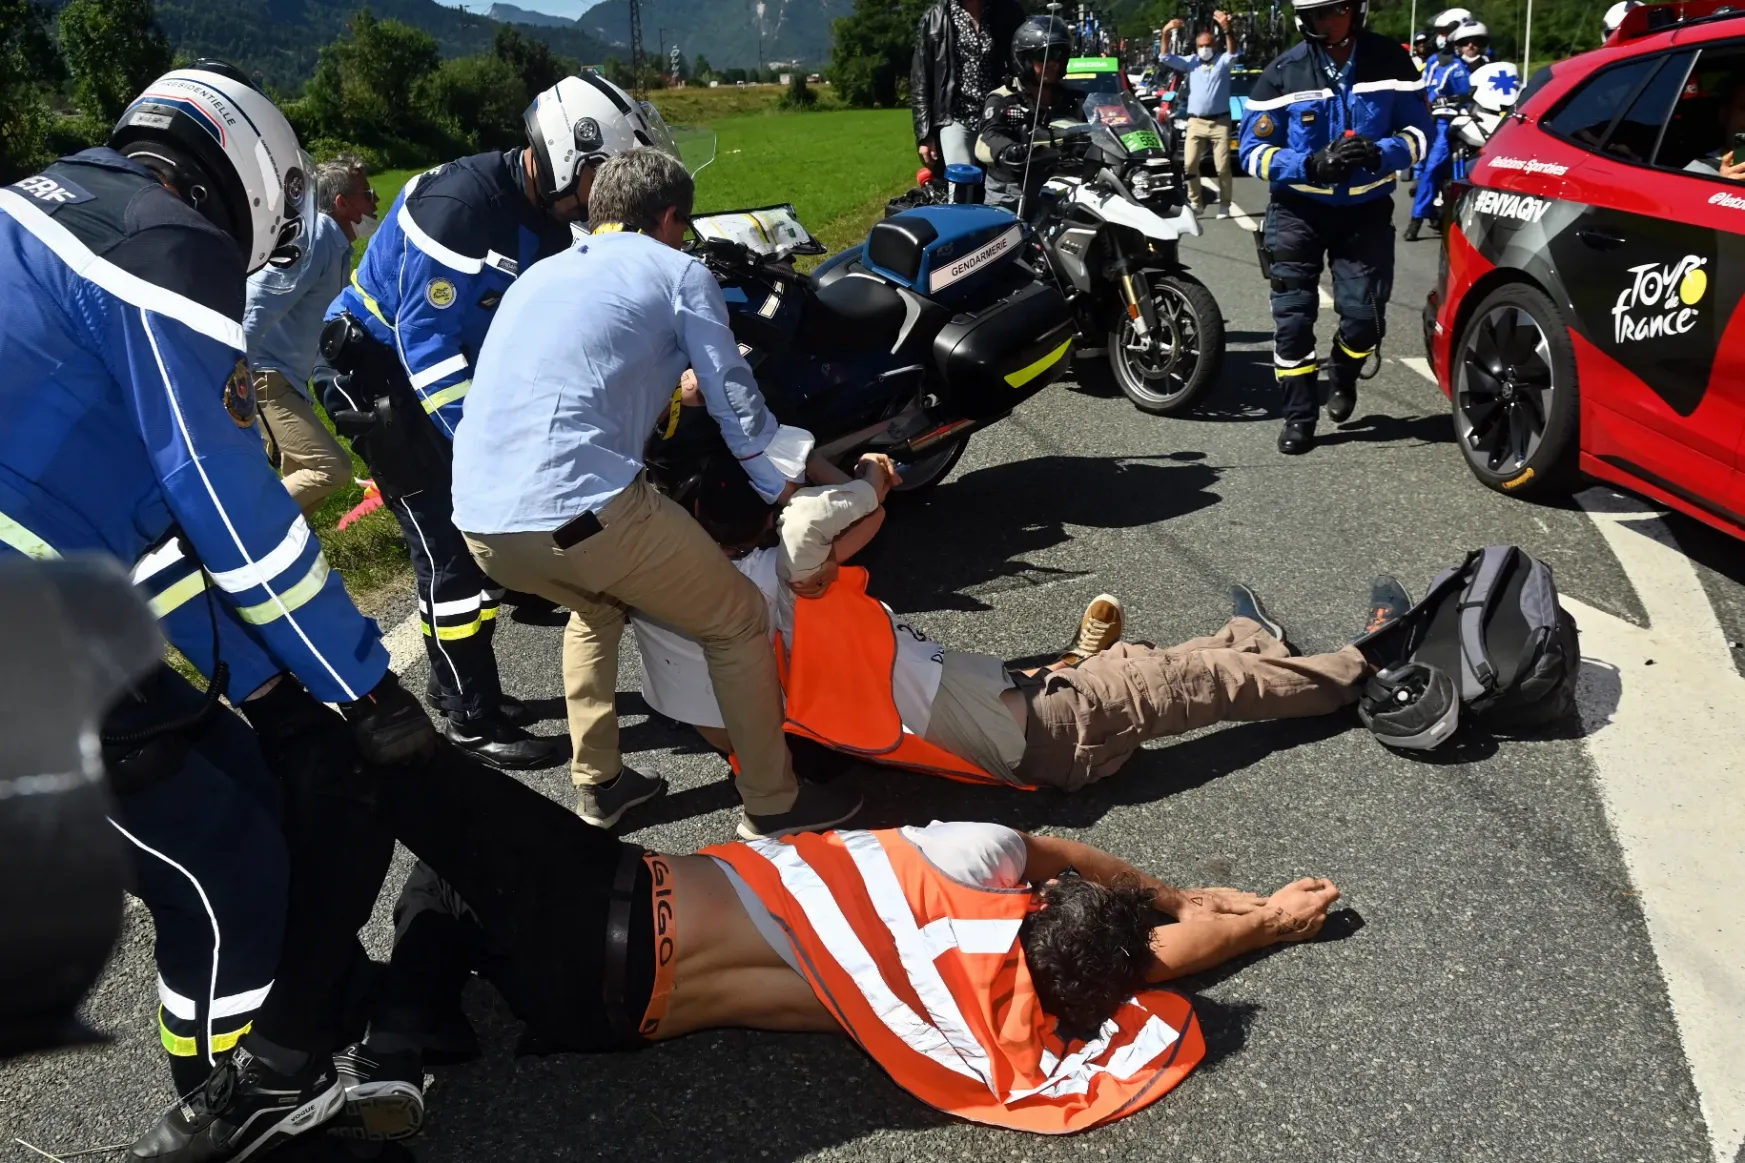 Klímaaktivista tüntetők szakították meg a Tour de France keddi szakaszát